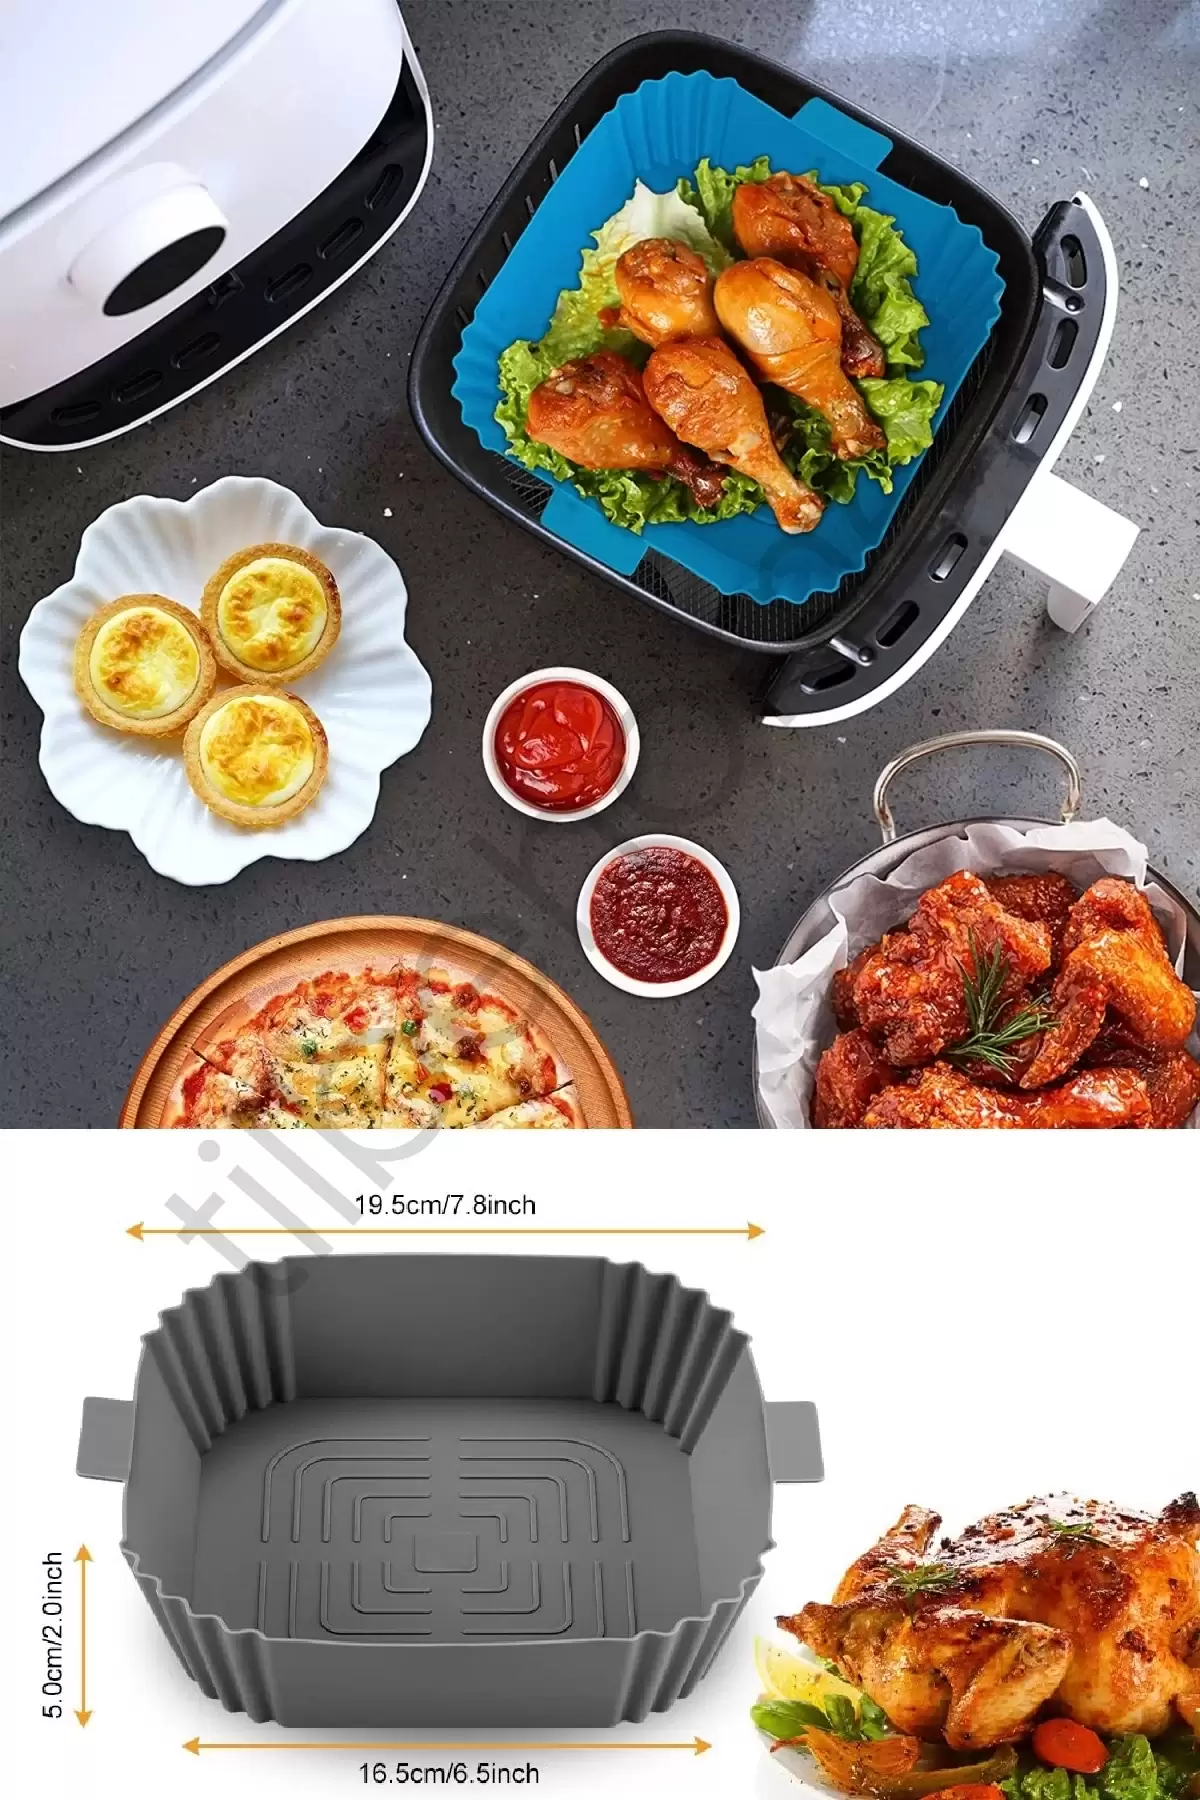 3lü Silikon Air Fryer Pişirme Kalıbı Premium Kare Fırın Mikrodalga Hava Fritözü Pişirme Kağıdı